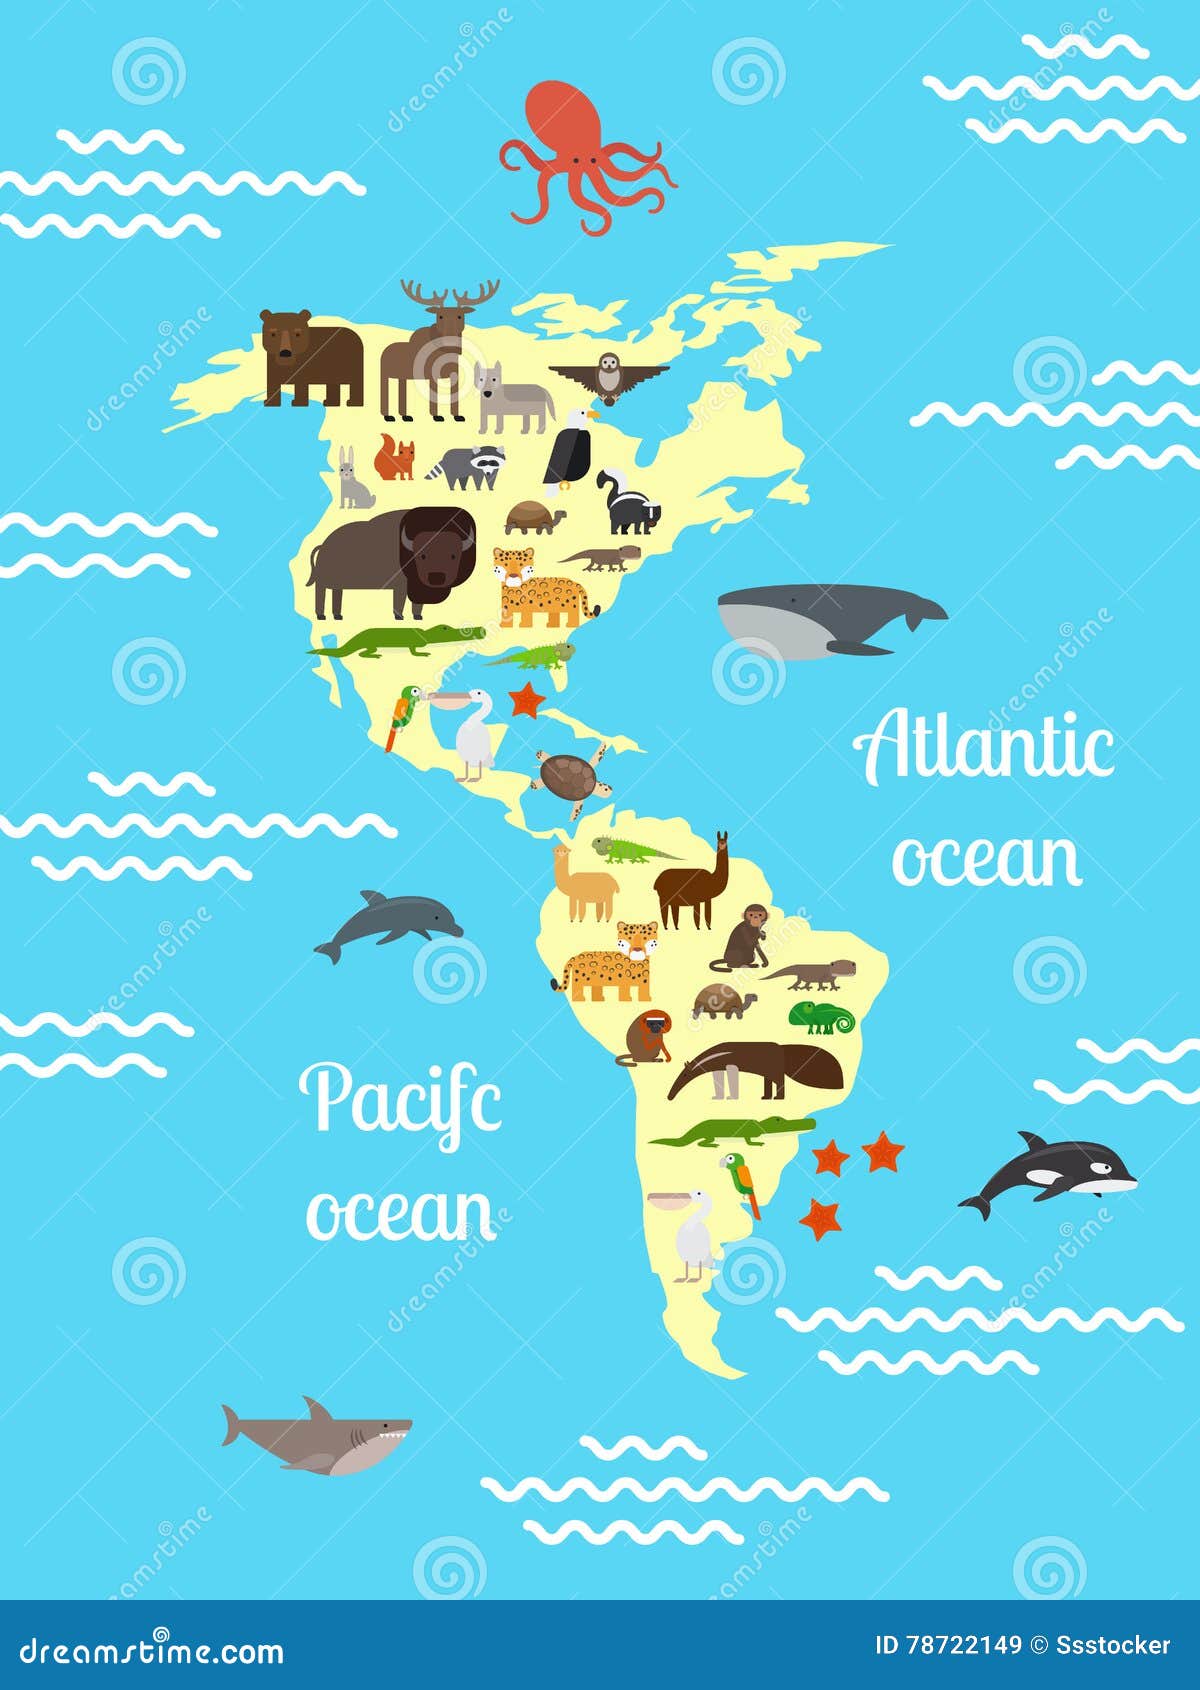 🥇 Autocollants pour enfants carte mondiale des animaux 🥇